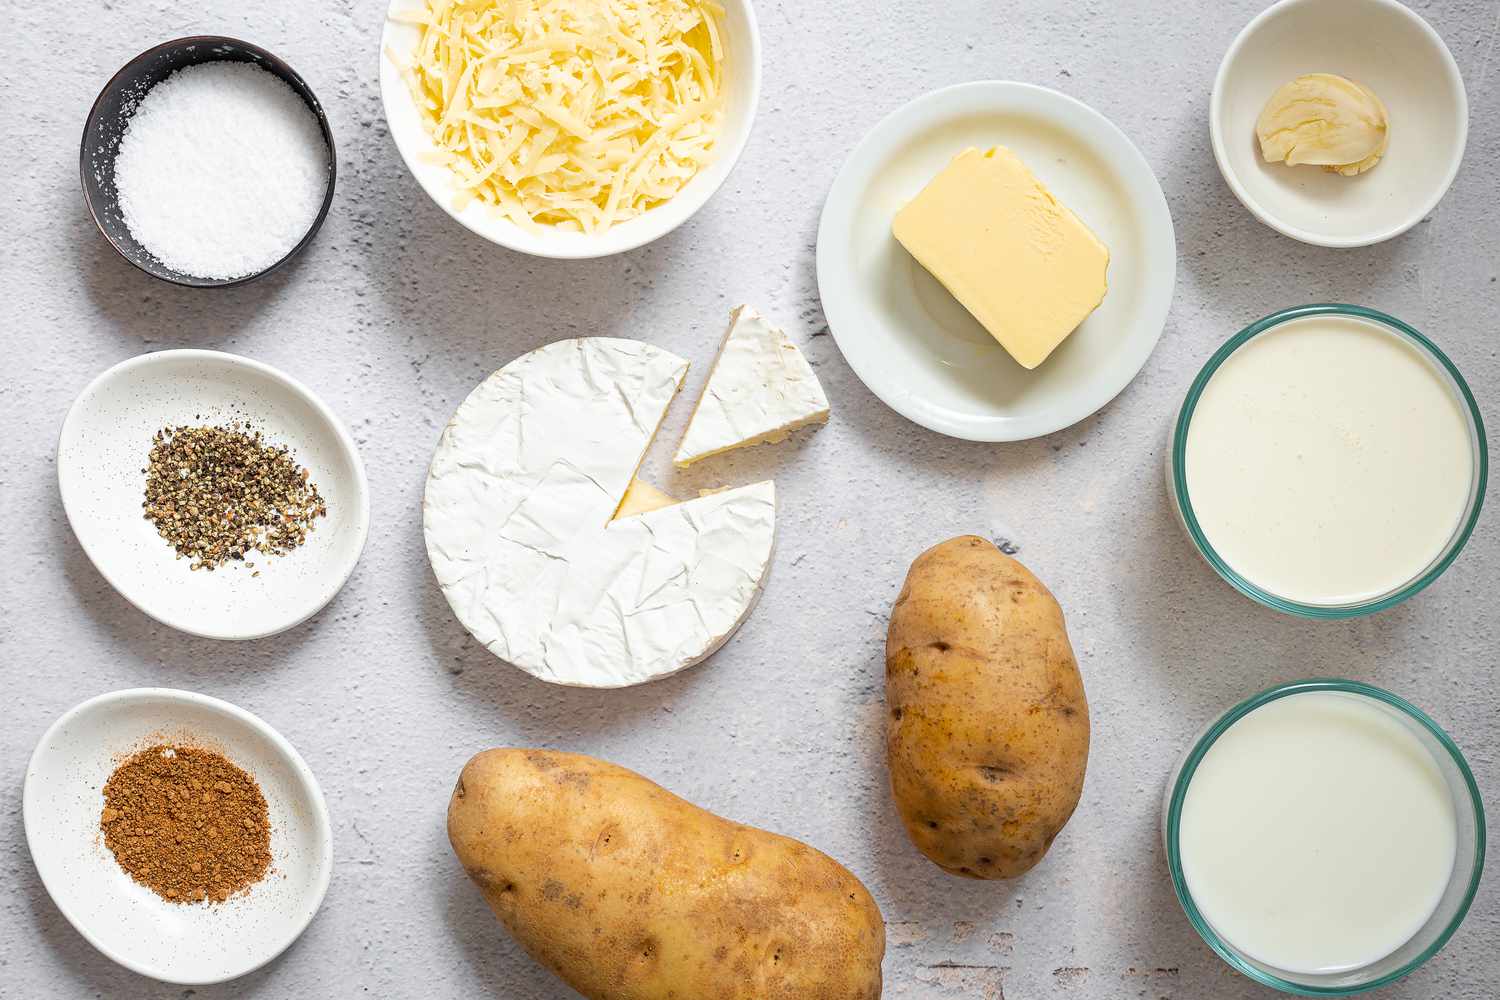 Ingredients for making potato gratin gathered